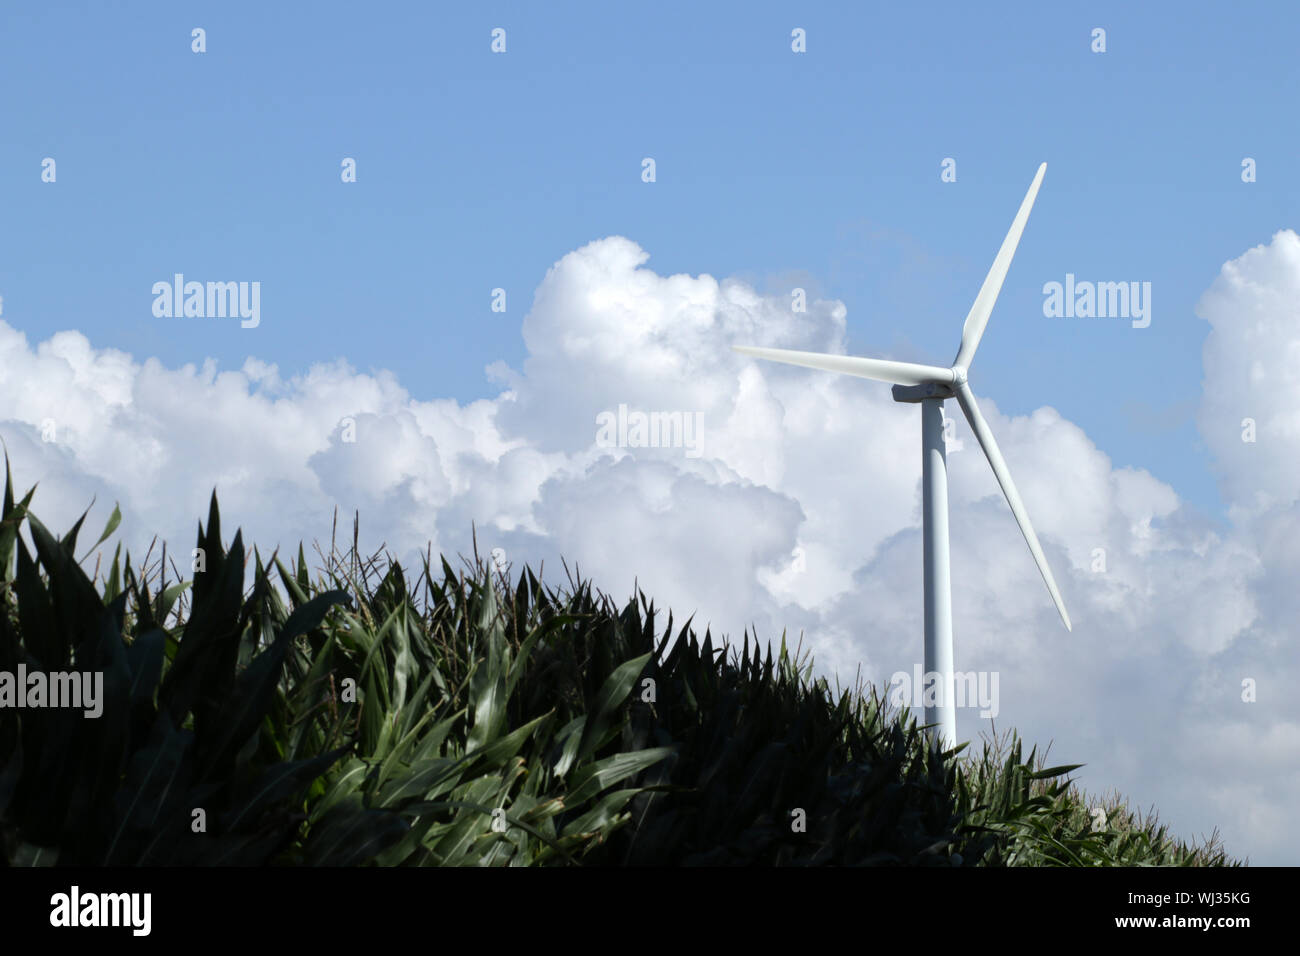 Aerogenerador produciendo electricidad verde en el campo de maíz, el paisaje agrícola Foto de stock